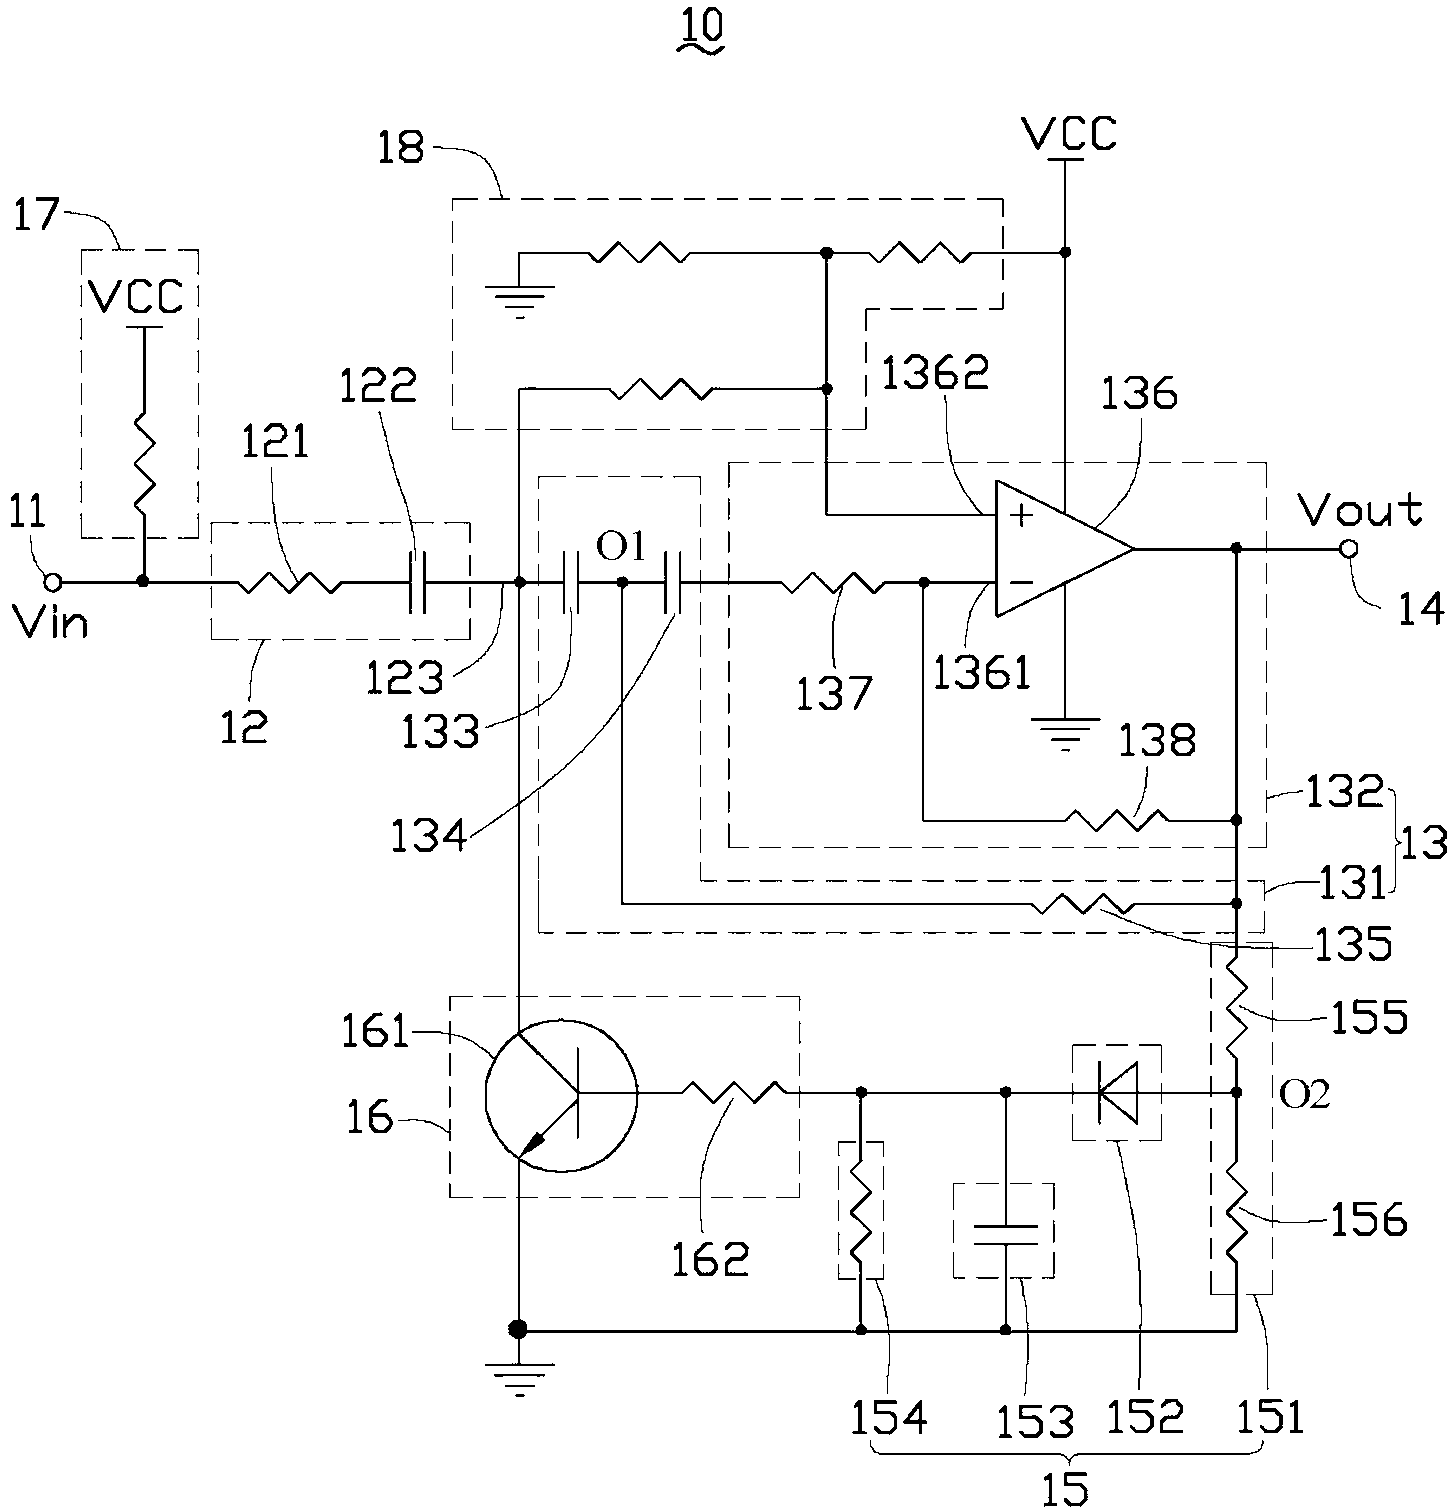 Audio processing circuit